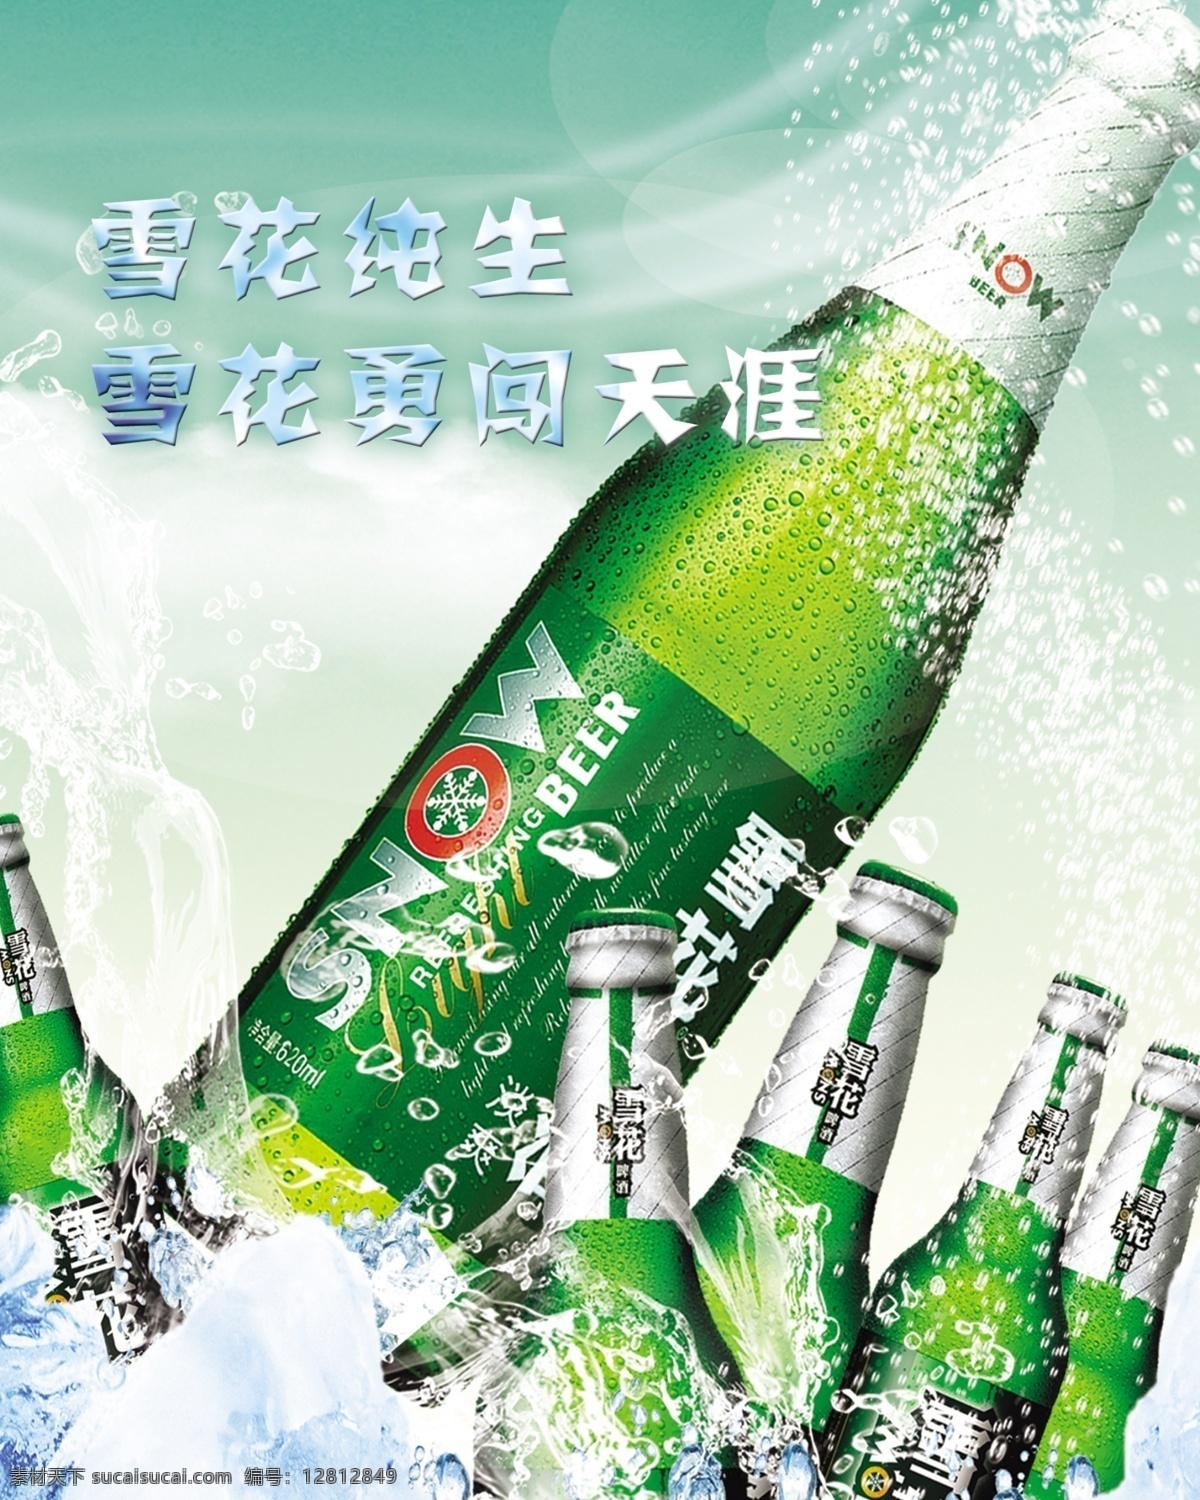 雪花 啤酒 冰块 绿 雪花啤酒 冰 水 冰啤 海报 原创设计 原创海报